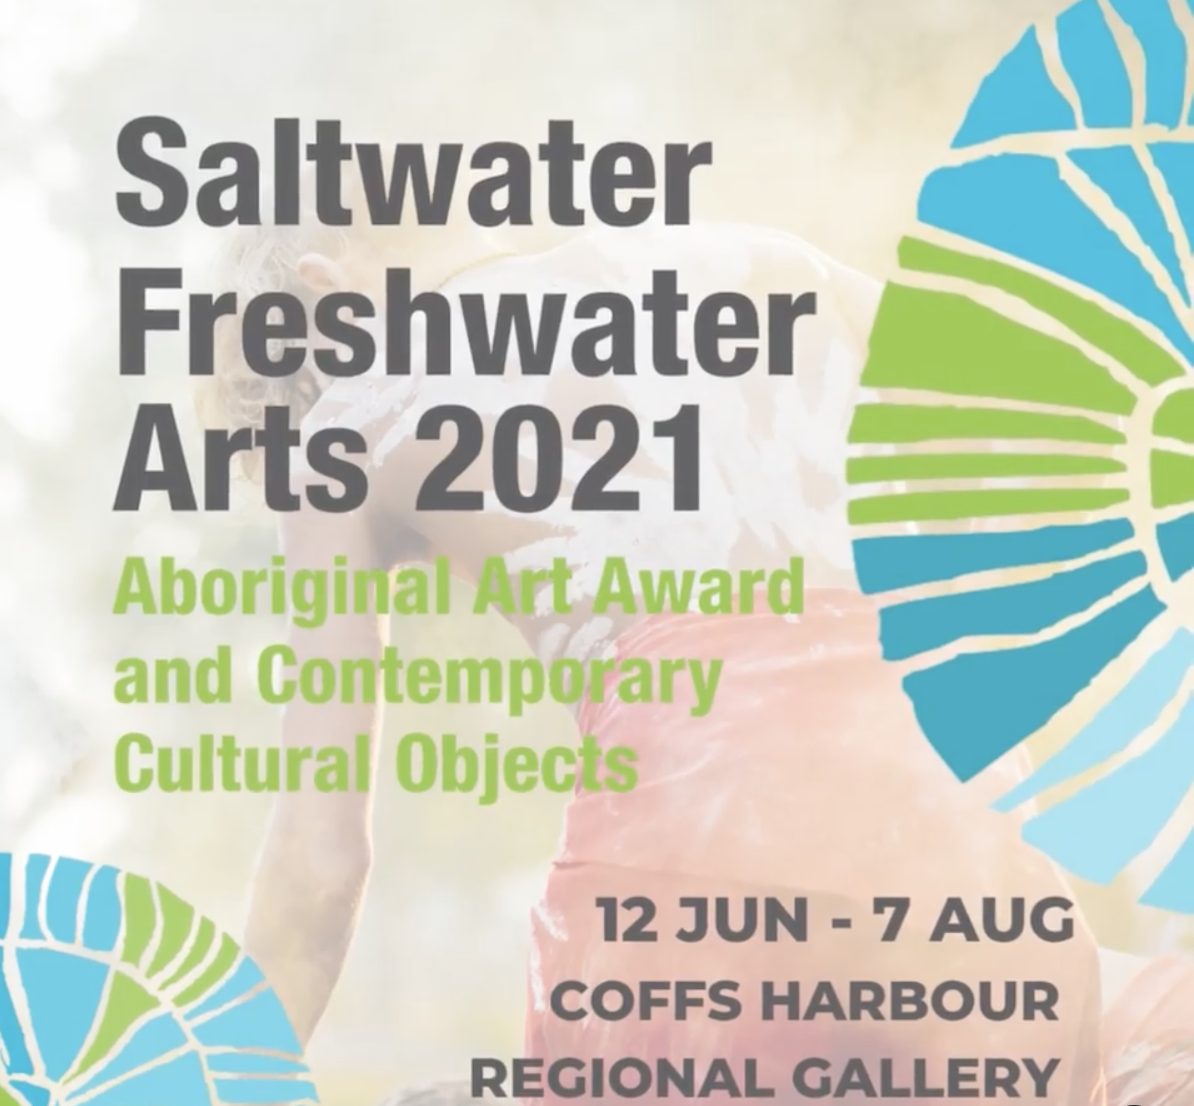 Saltwater Freshwater Arts Exhibition